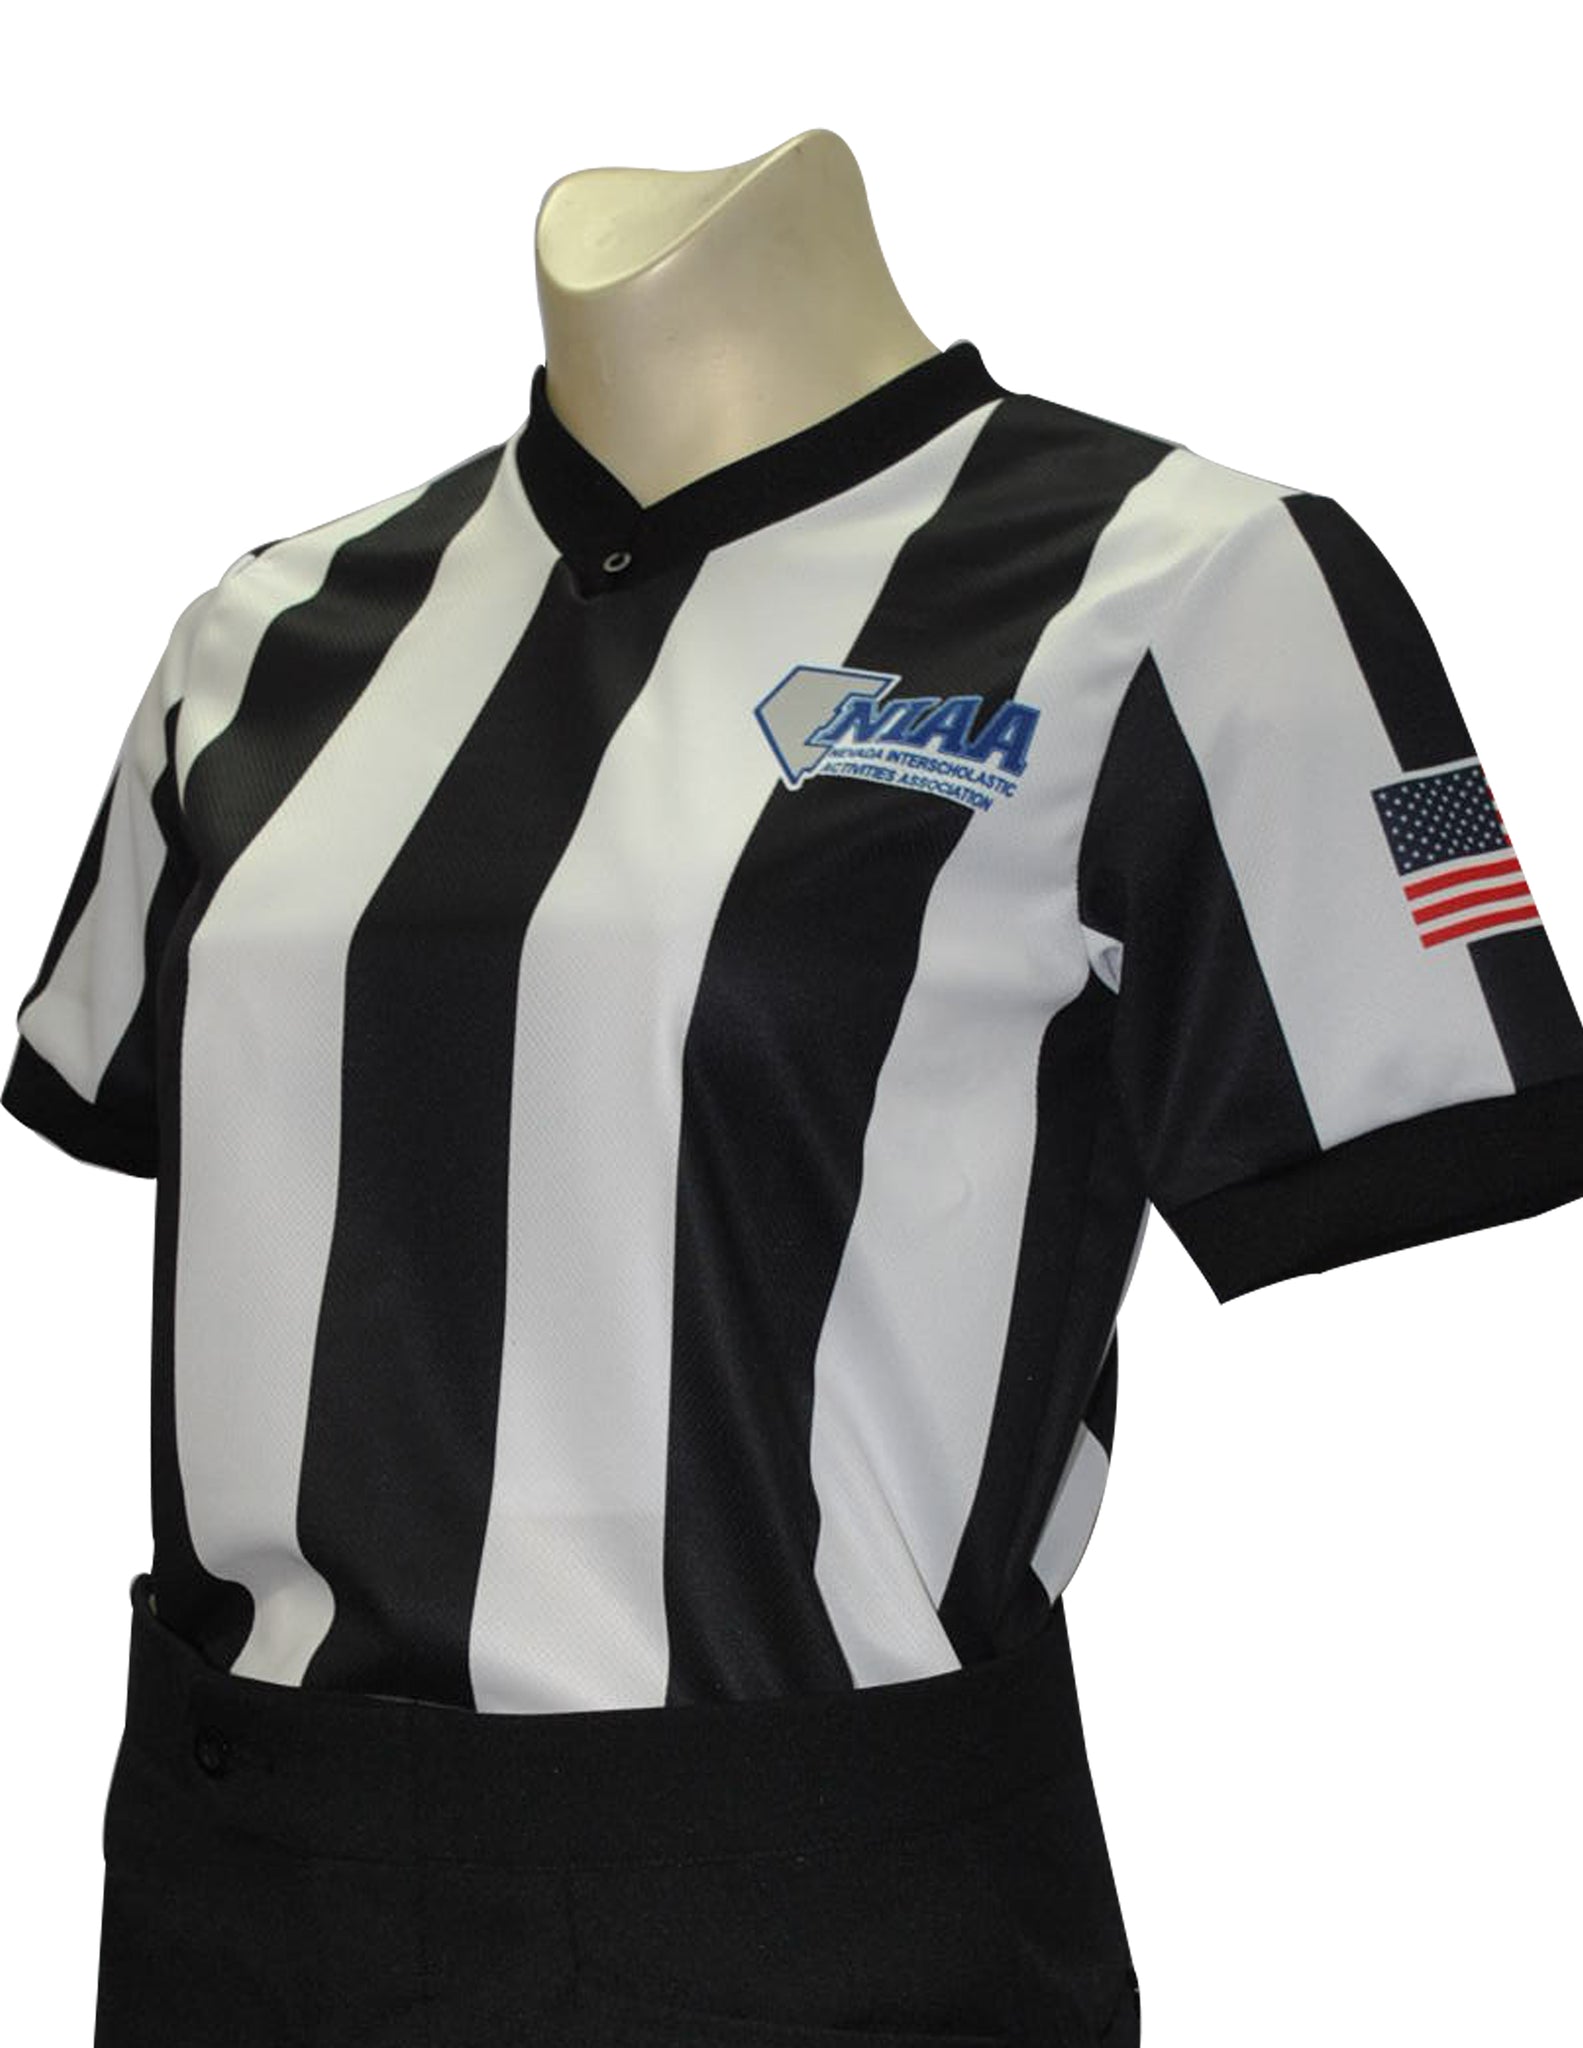 USA239NV - Smitty "Made in USA" - Basketball Women's Short Sleeve Shirt